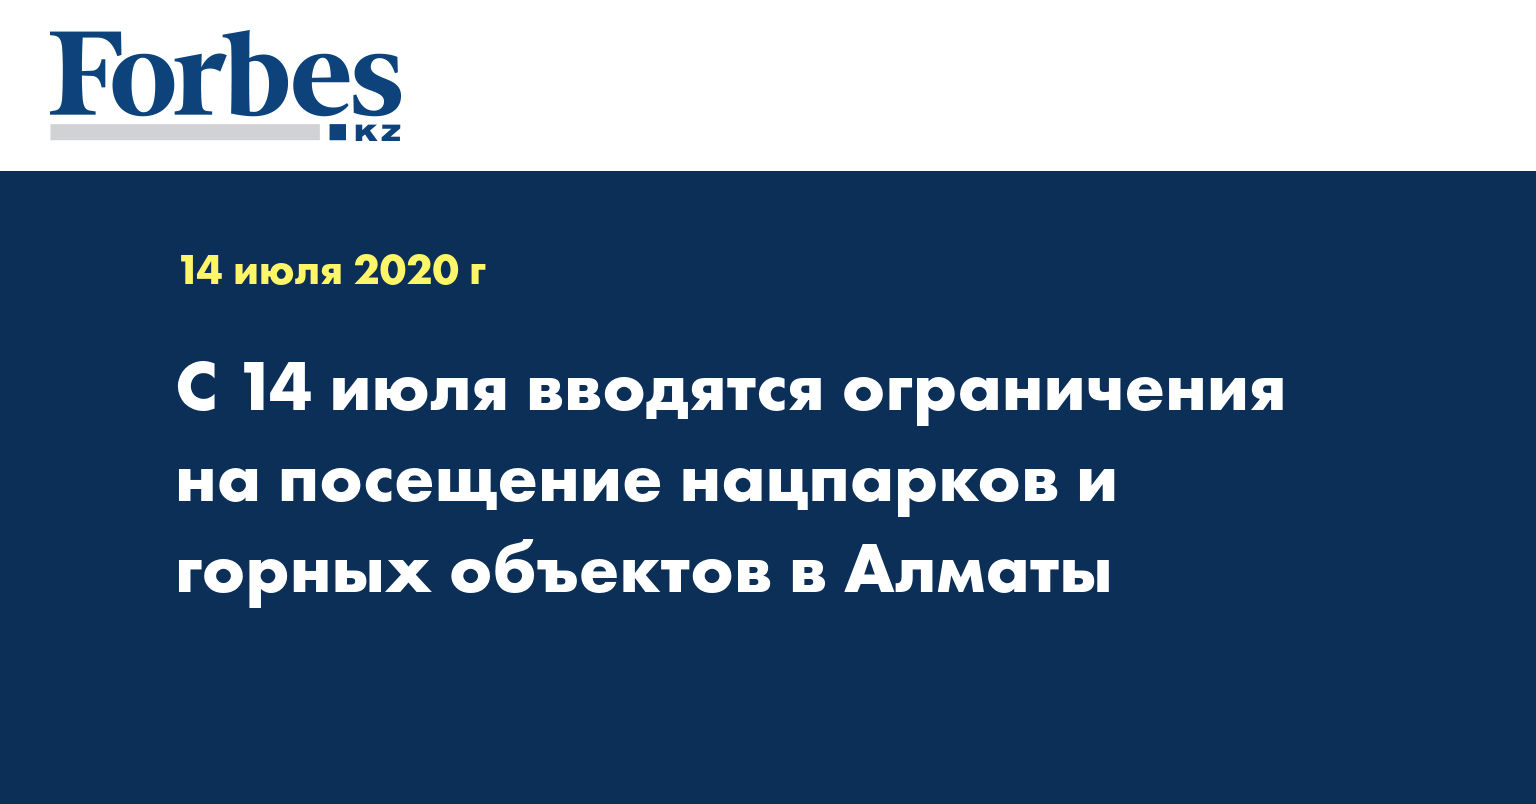 С 14 июля вводятся ограничения на посещение нацпарков и горных объектов в Алматы